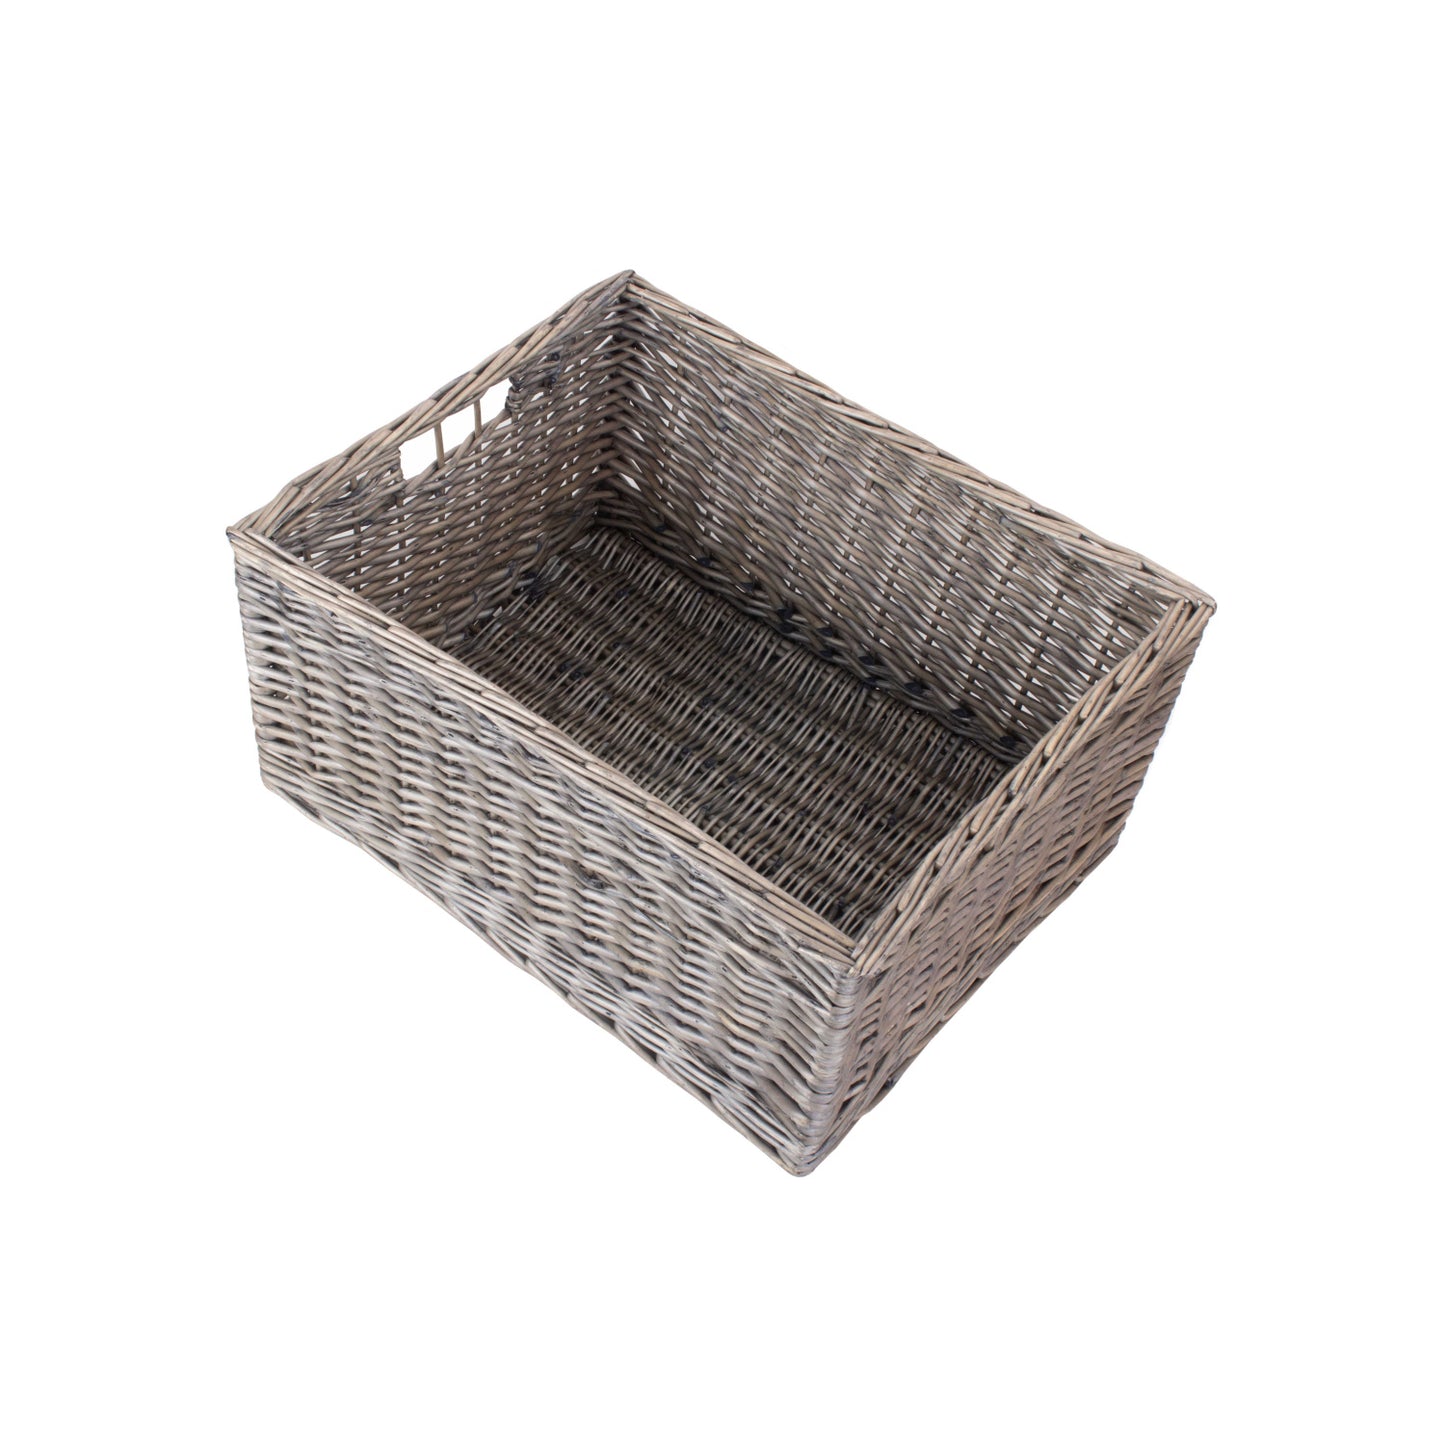 Jumbo Antique Wash Storage Basket - Unlined